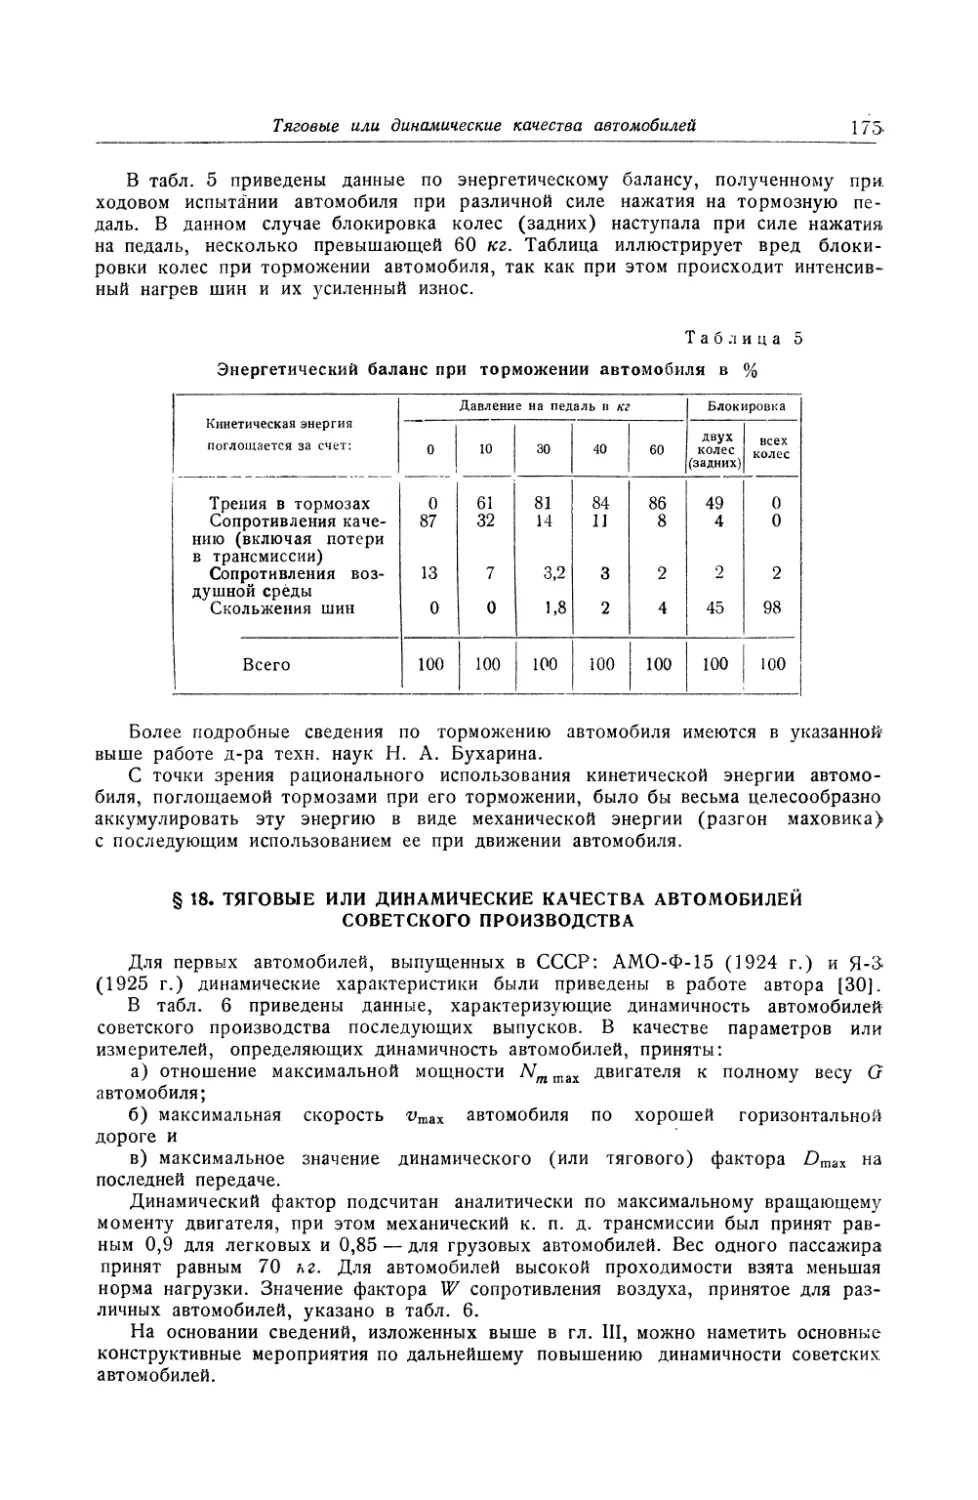 § 18. Тяговые или динамические качества автомобилей советского производства